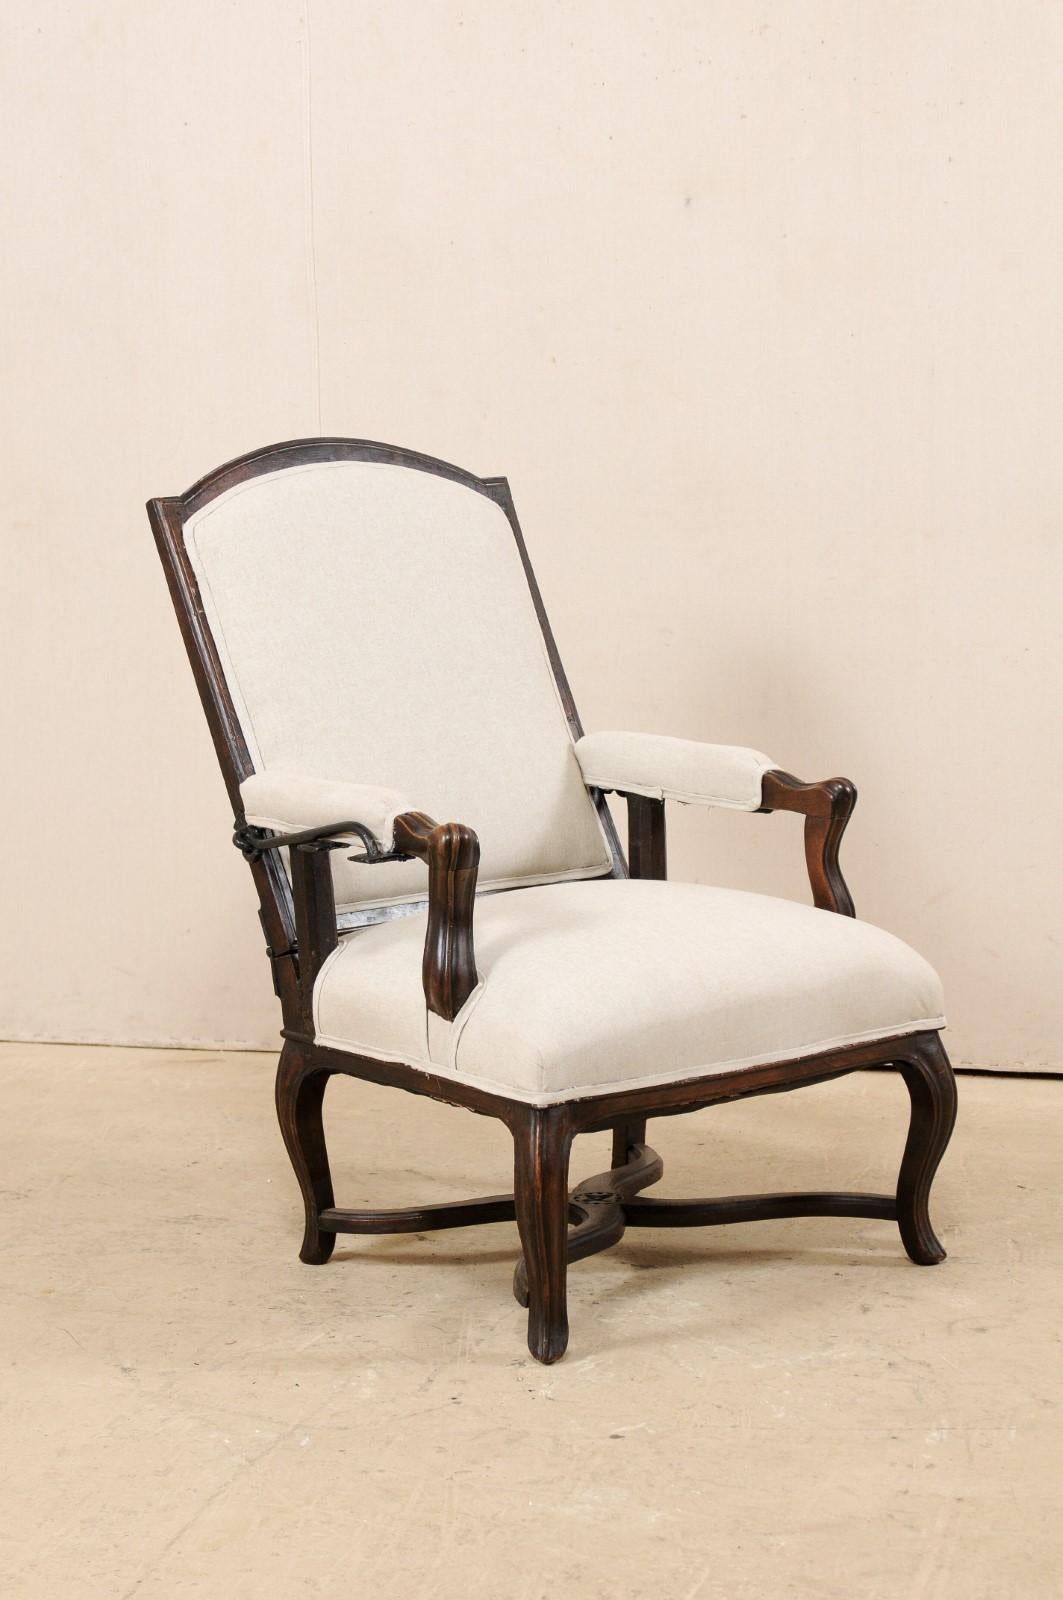 Ein italienischer Holz- und Polsterstuhl aus dem frühen 19. Jahrhundert. Dieser antike Stuhl aus Italien hat eine rechteckige Rückenlehne mit einer gewölbten Oberleiste aus Holz, schön geschnitzte Knöchel, Manchette-Armlehnen und steht auf sanft